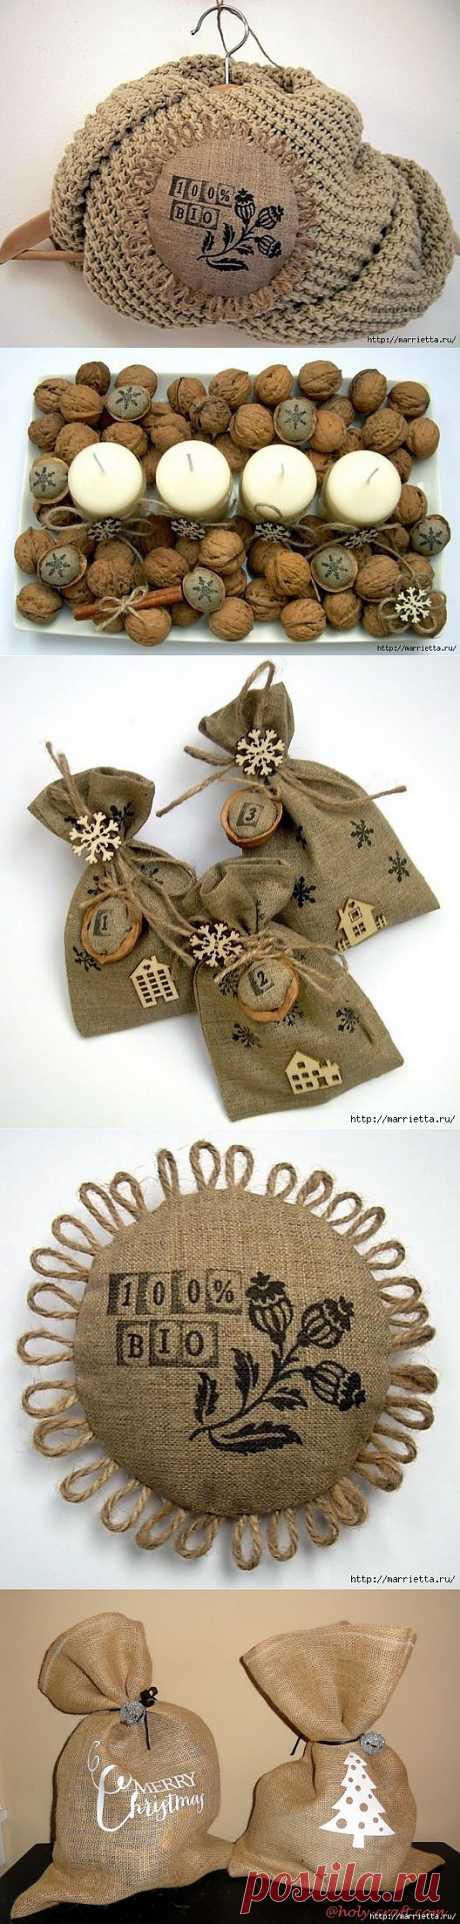 Идеи упаковки новогодних подарков. Шьем мешочки и украшаем их грецкими орехами.